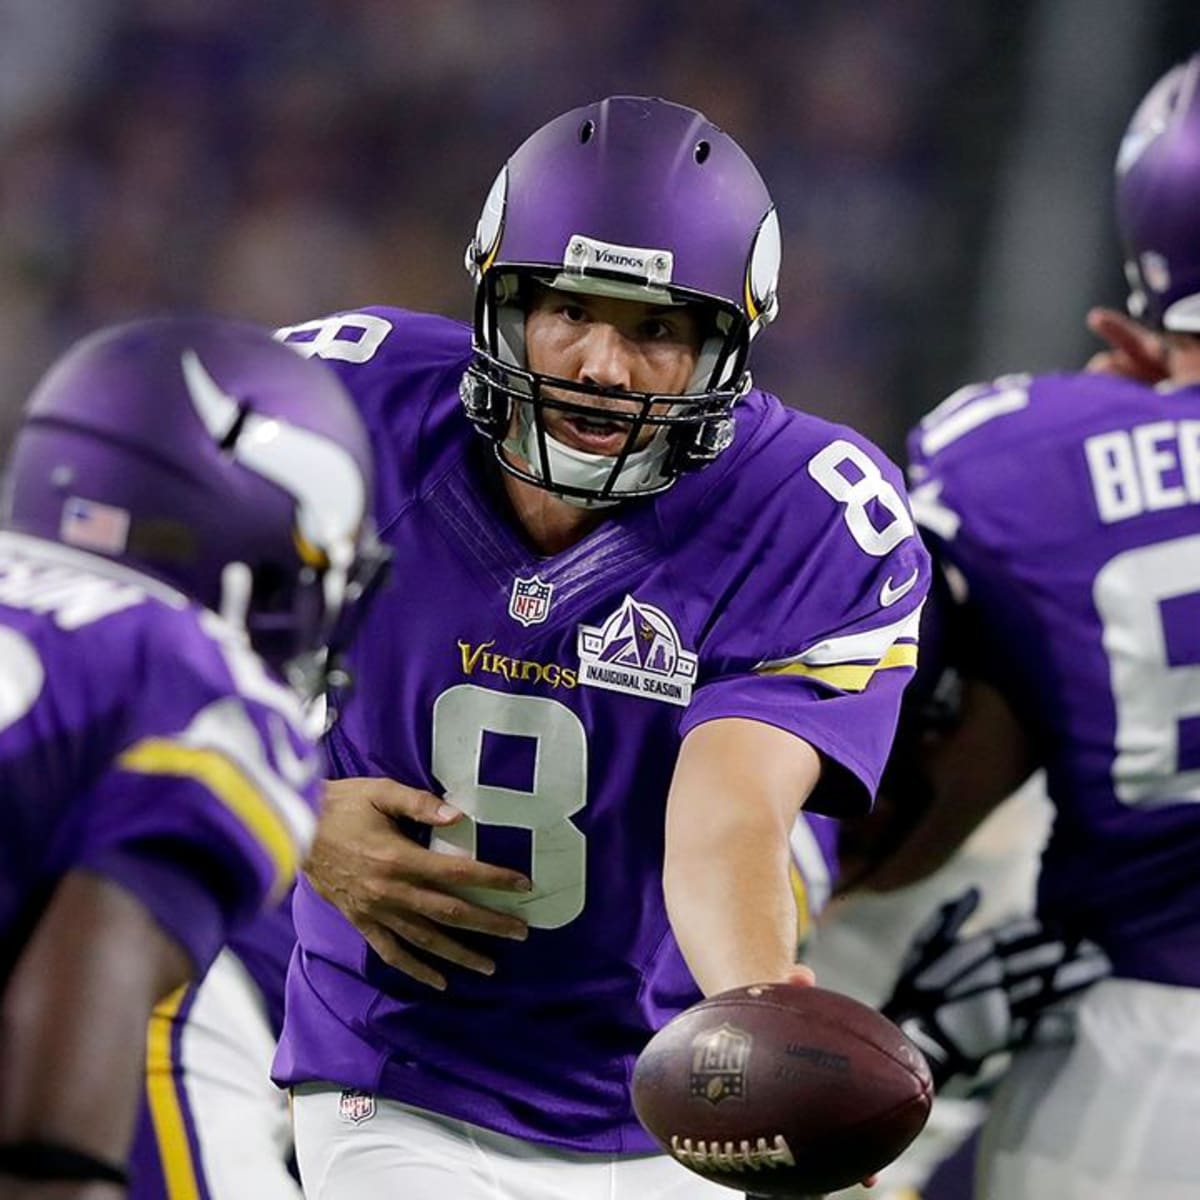 Bradford leads Vikings over Packers 17-14 in Minnesota debut